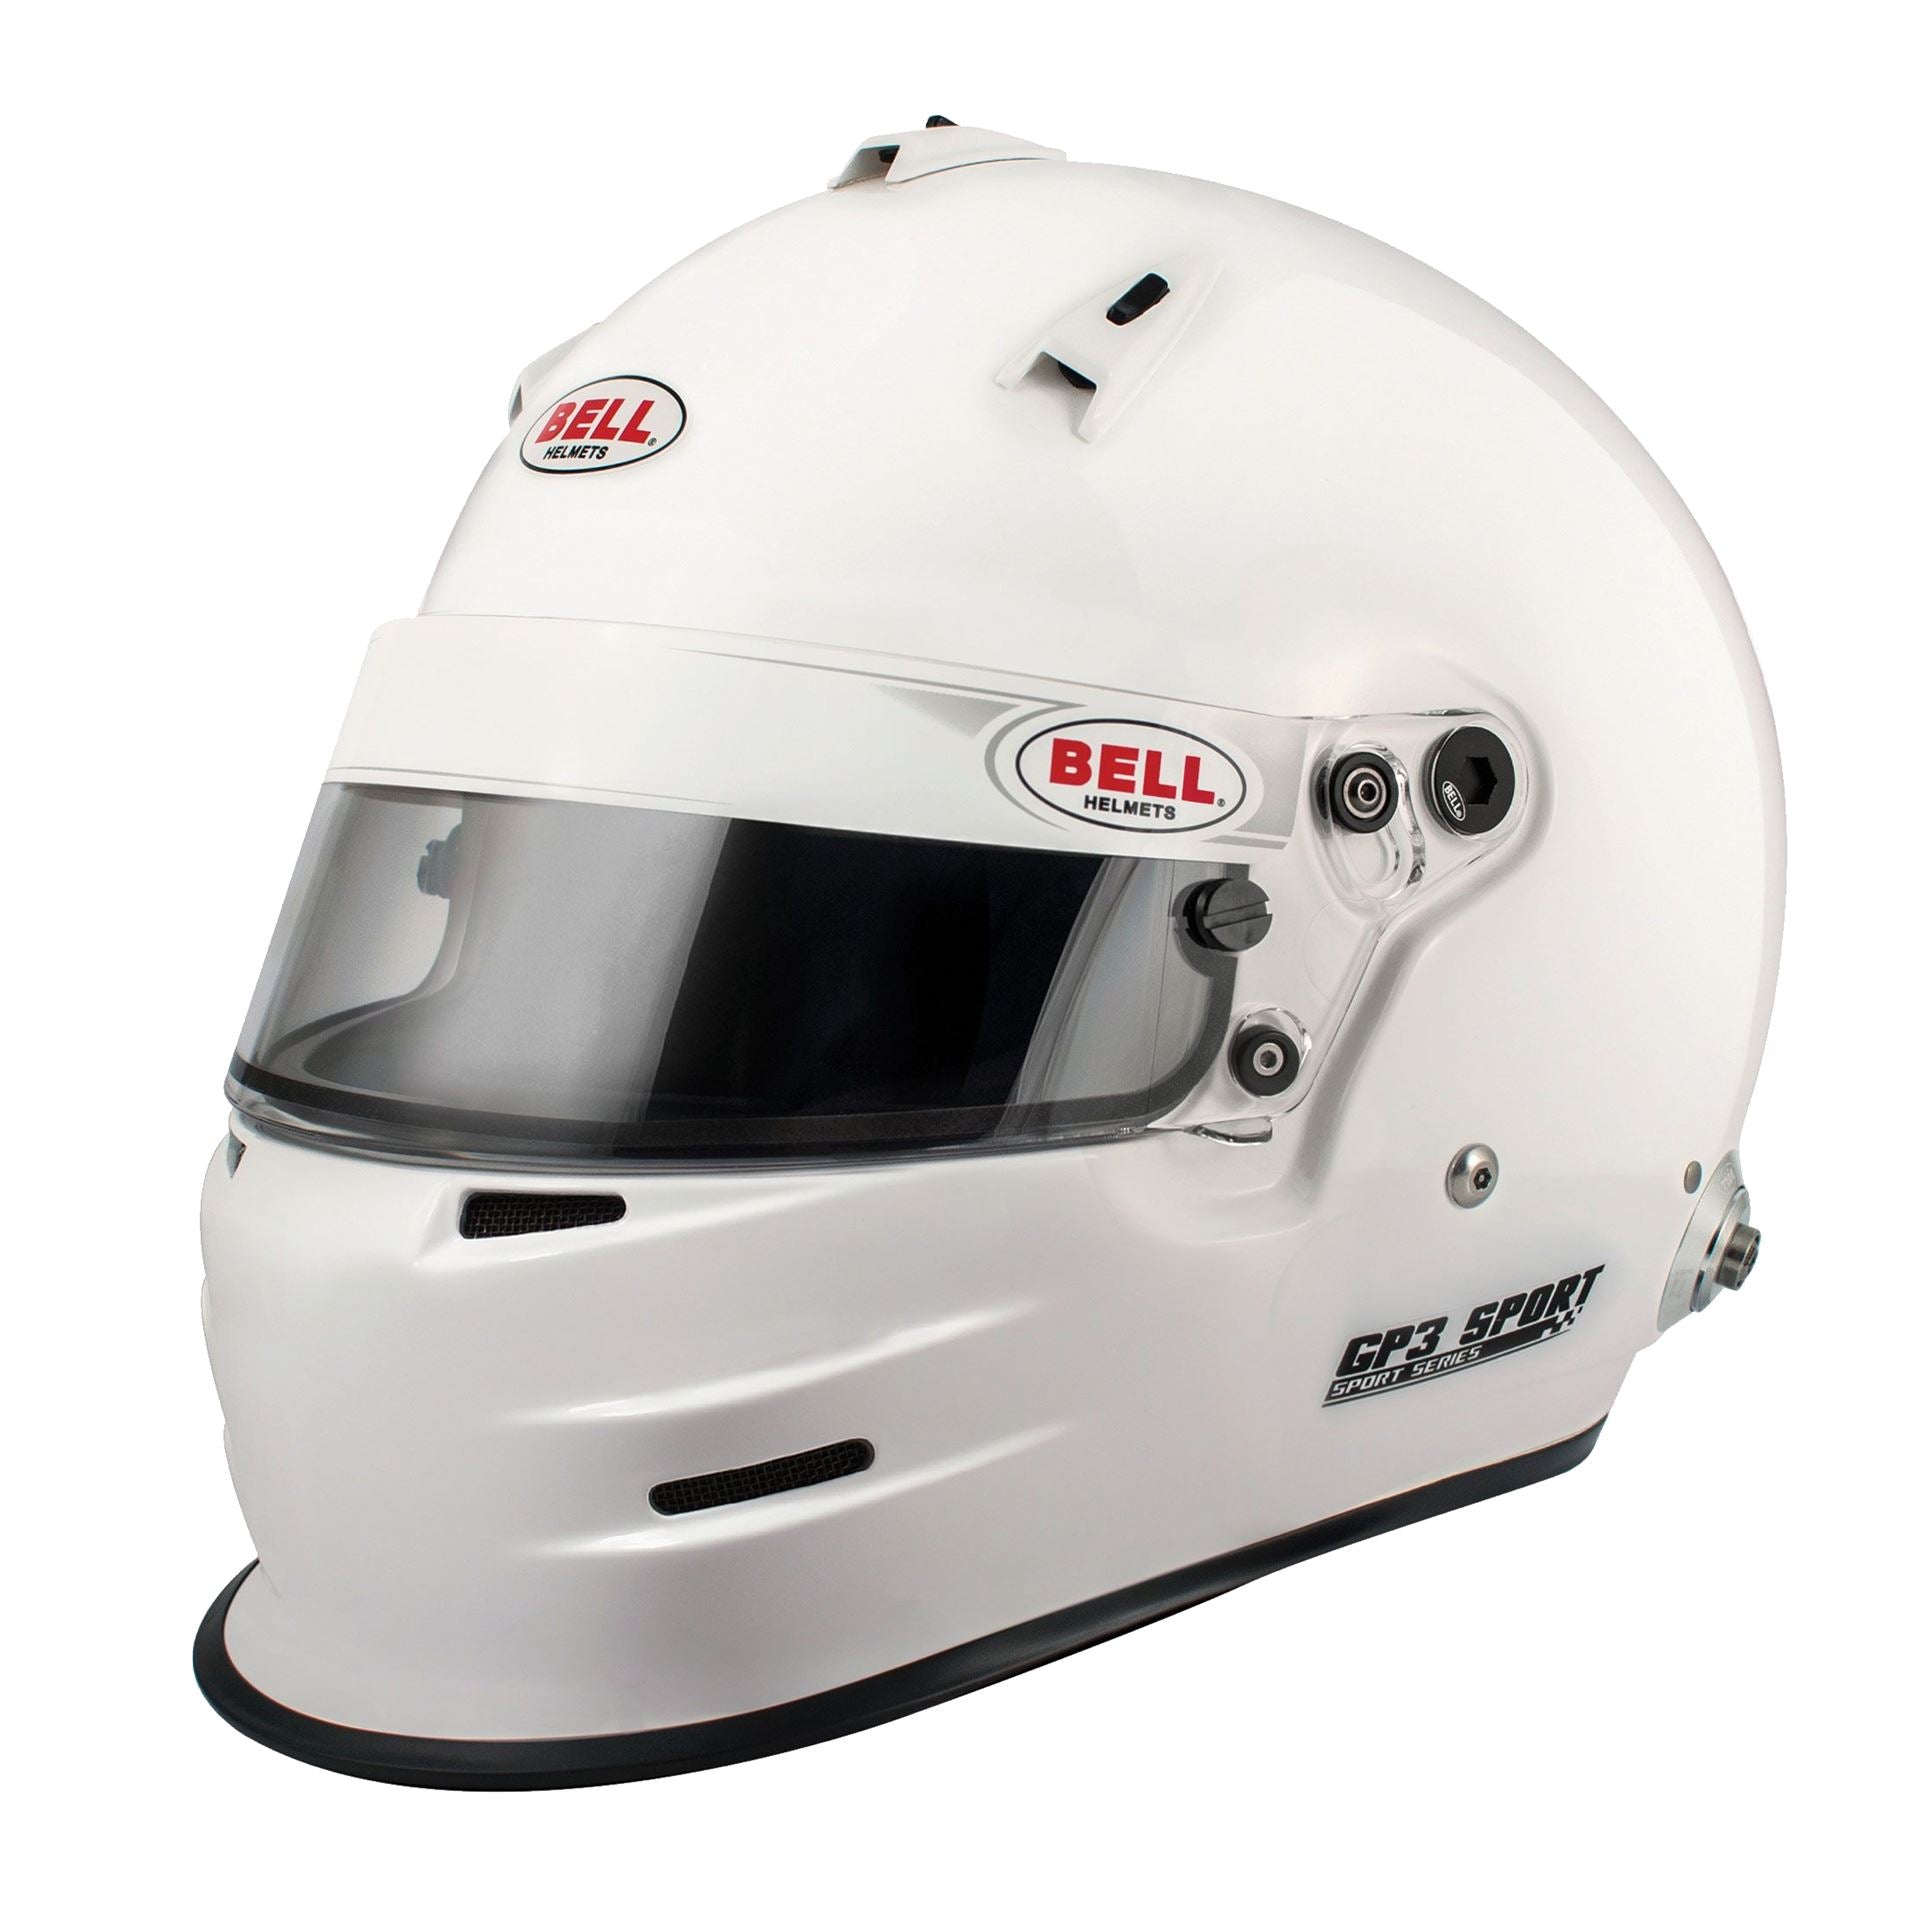 BELL 1417023 Racing helmet full-face GP3 SPORT, HANS, FIA8859, white, size LRG (60-61) Photo-0 